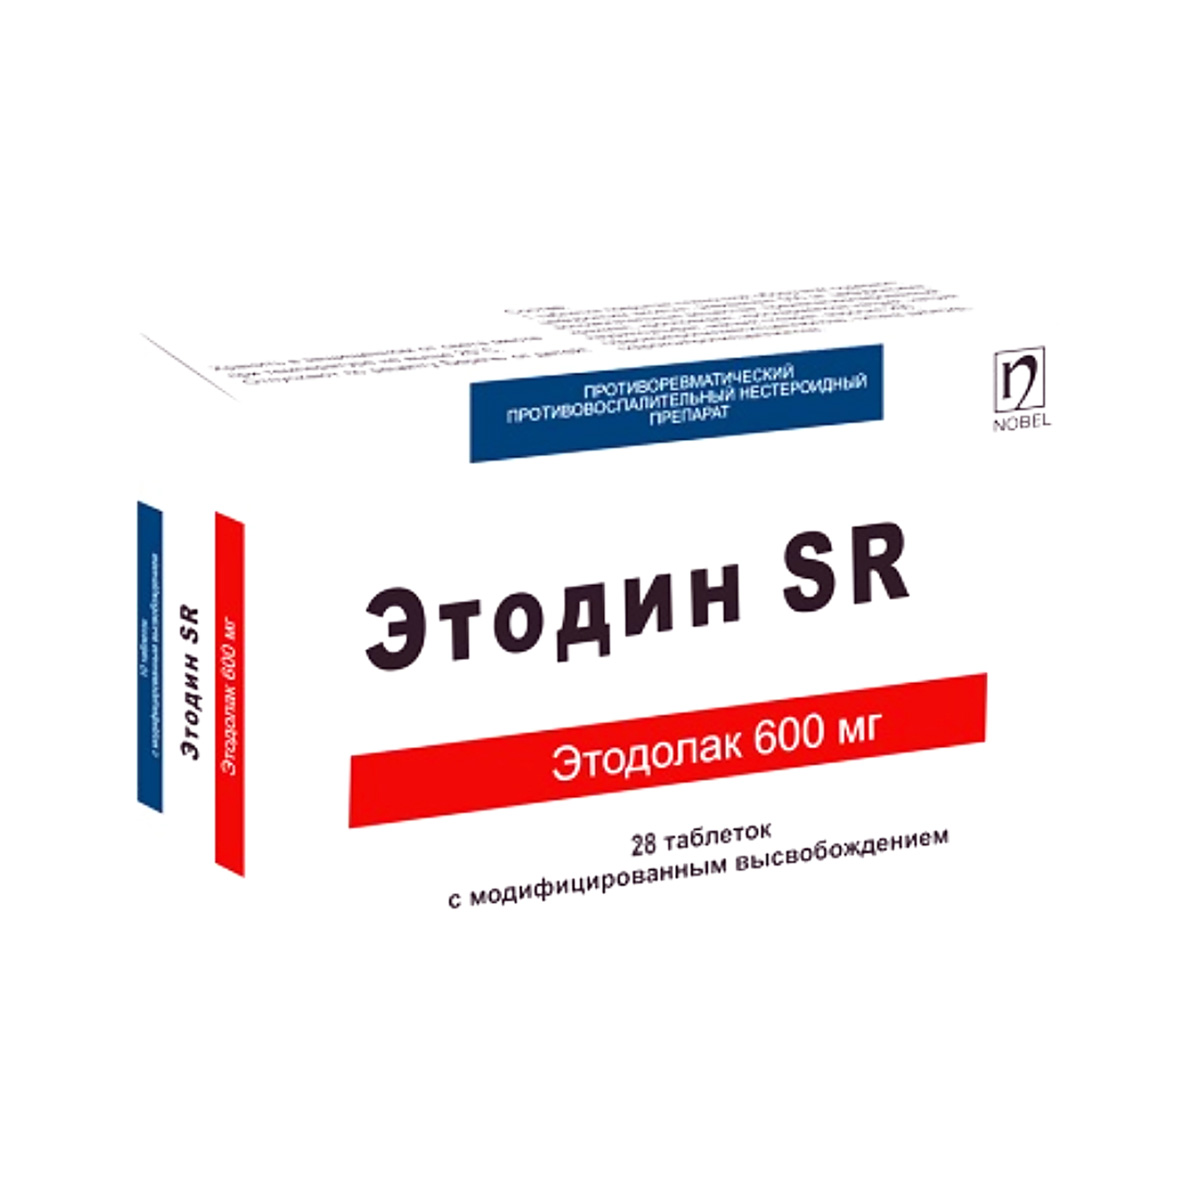 Этодин SR 600 мг таблетки с модифицированным высвобождением 28 шт